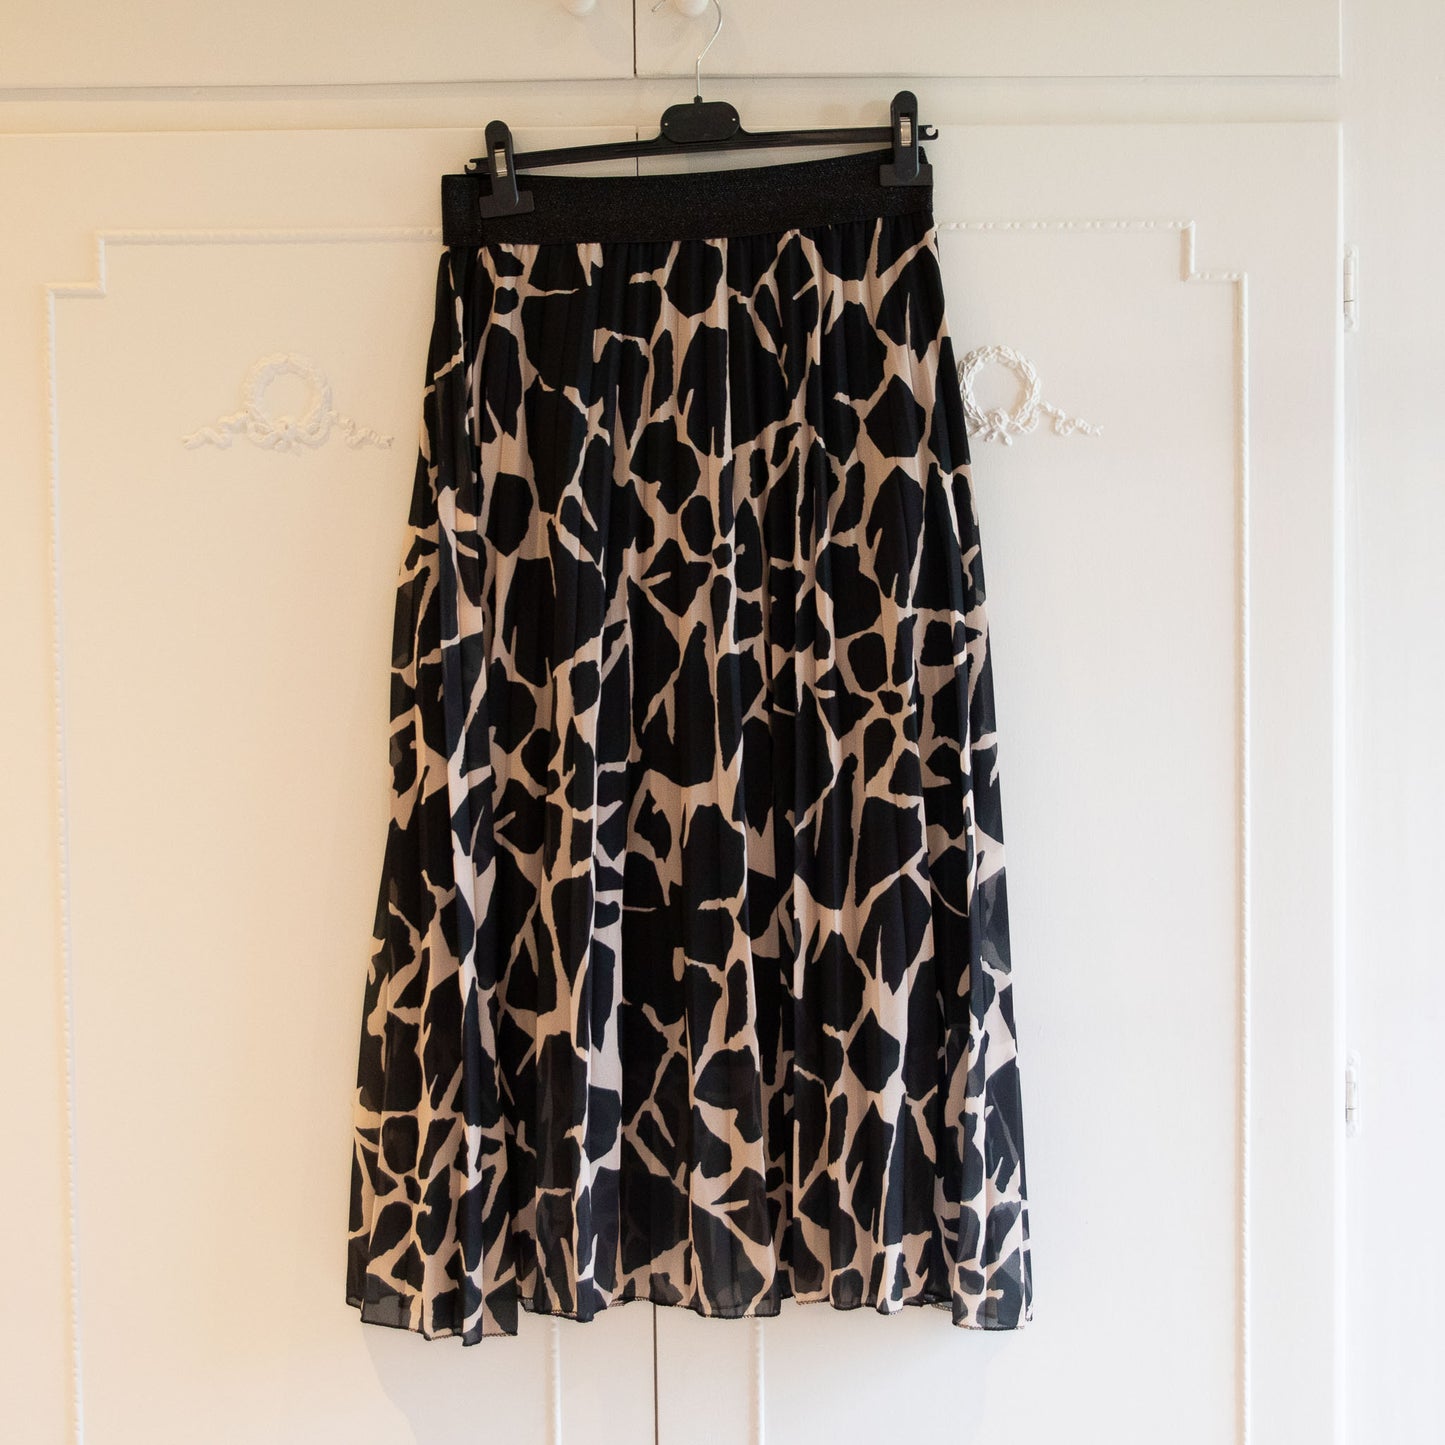 Giraffe Print Skirt Black/Beige